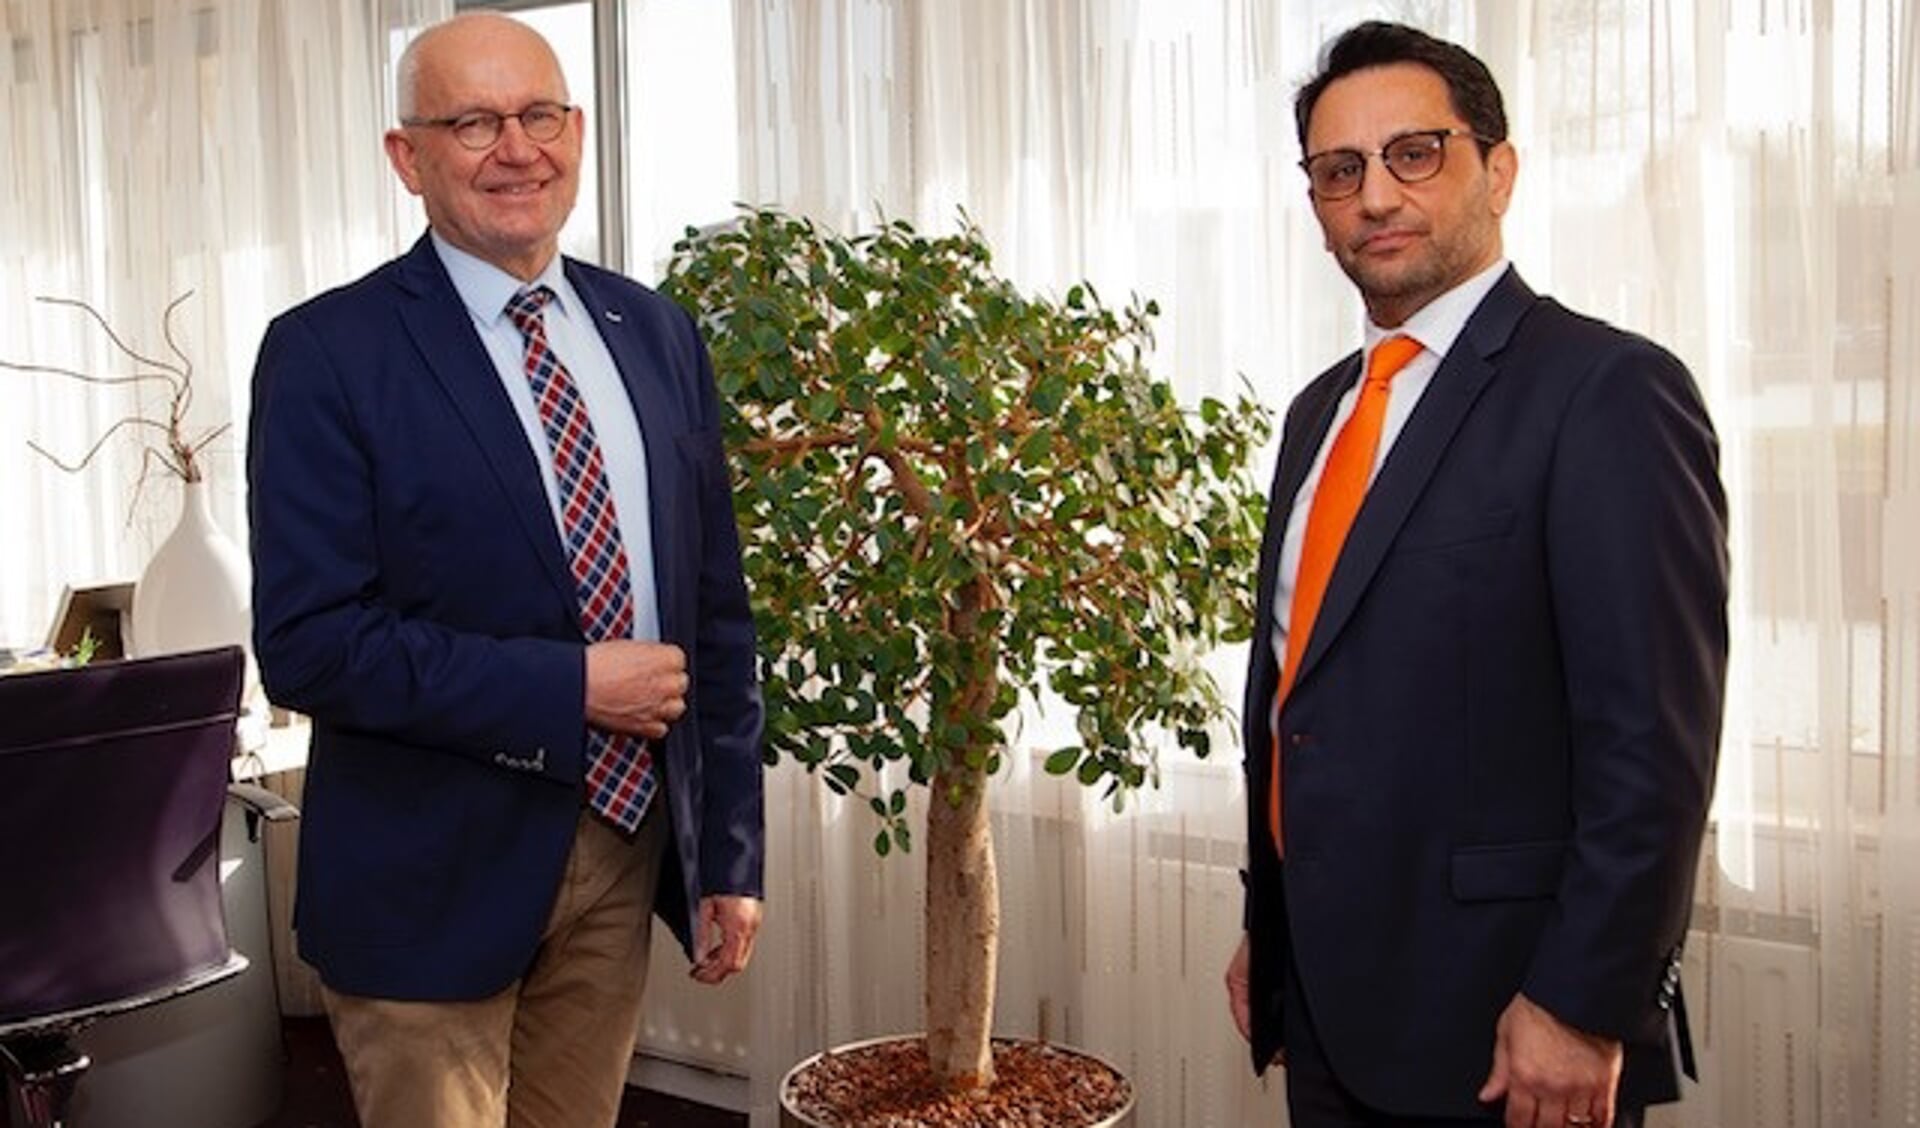 Burgemeester Jan Heijkoop en voorzitter van de Oranjevereniging Eyup Karso